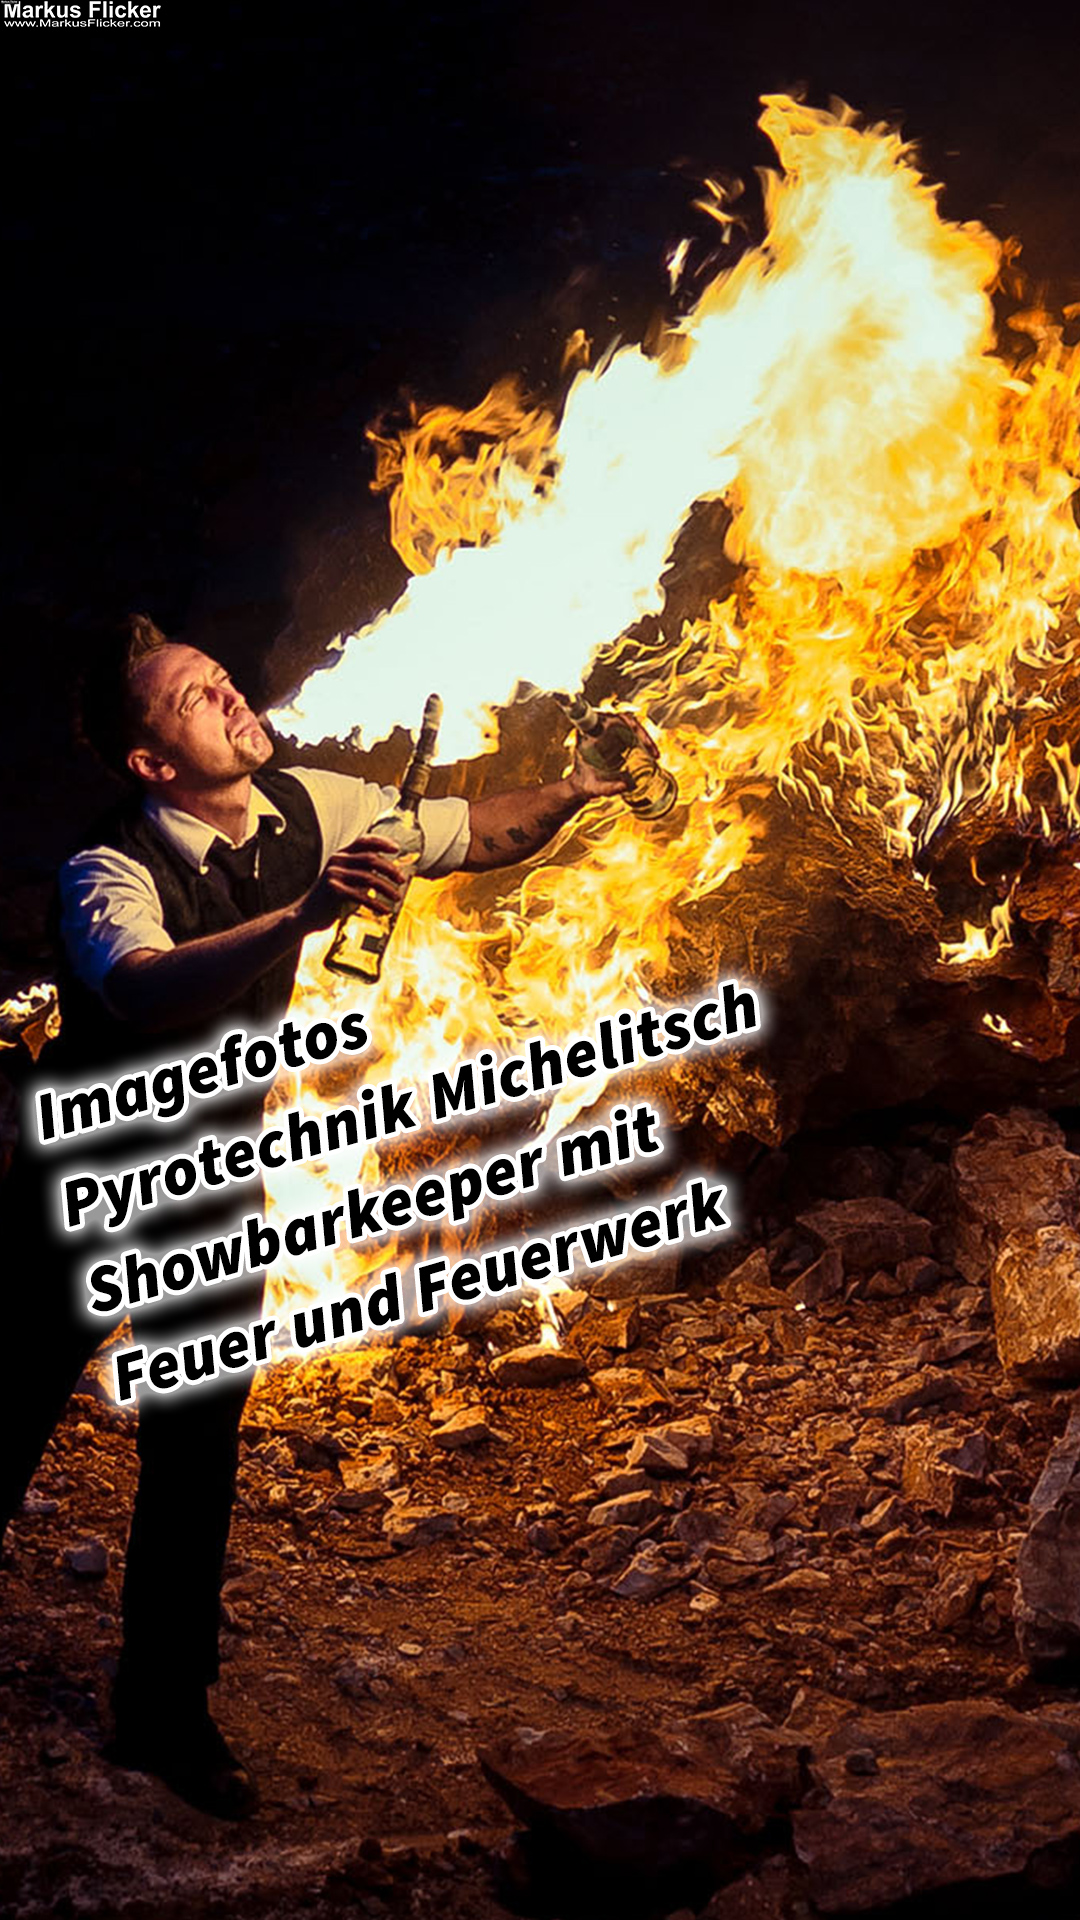 Imagefotos Pyrotechnik Michelitsch Showbarkeeper mit Feuer und Feuerwerk